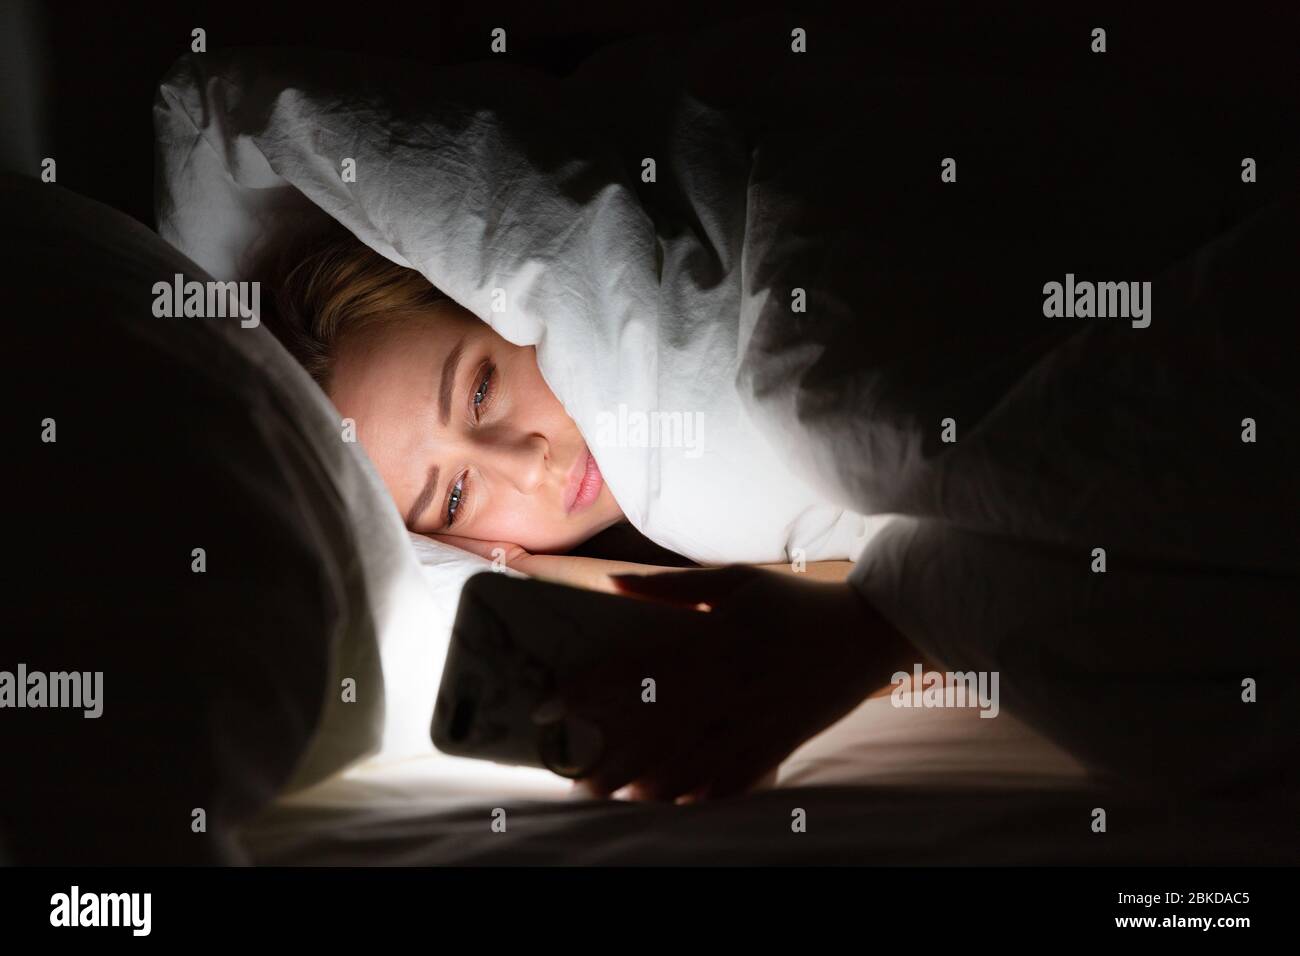 Femme posée au lit sous la couverture en utilisant un smartphone tard dans la nuit, ne peut pas dormir, accro des nouvelles sur Covid-19 ou le défilement des réseaux sociaux. Insomnie, Banque D'Images